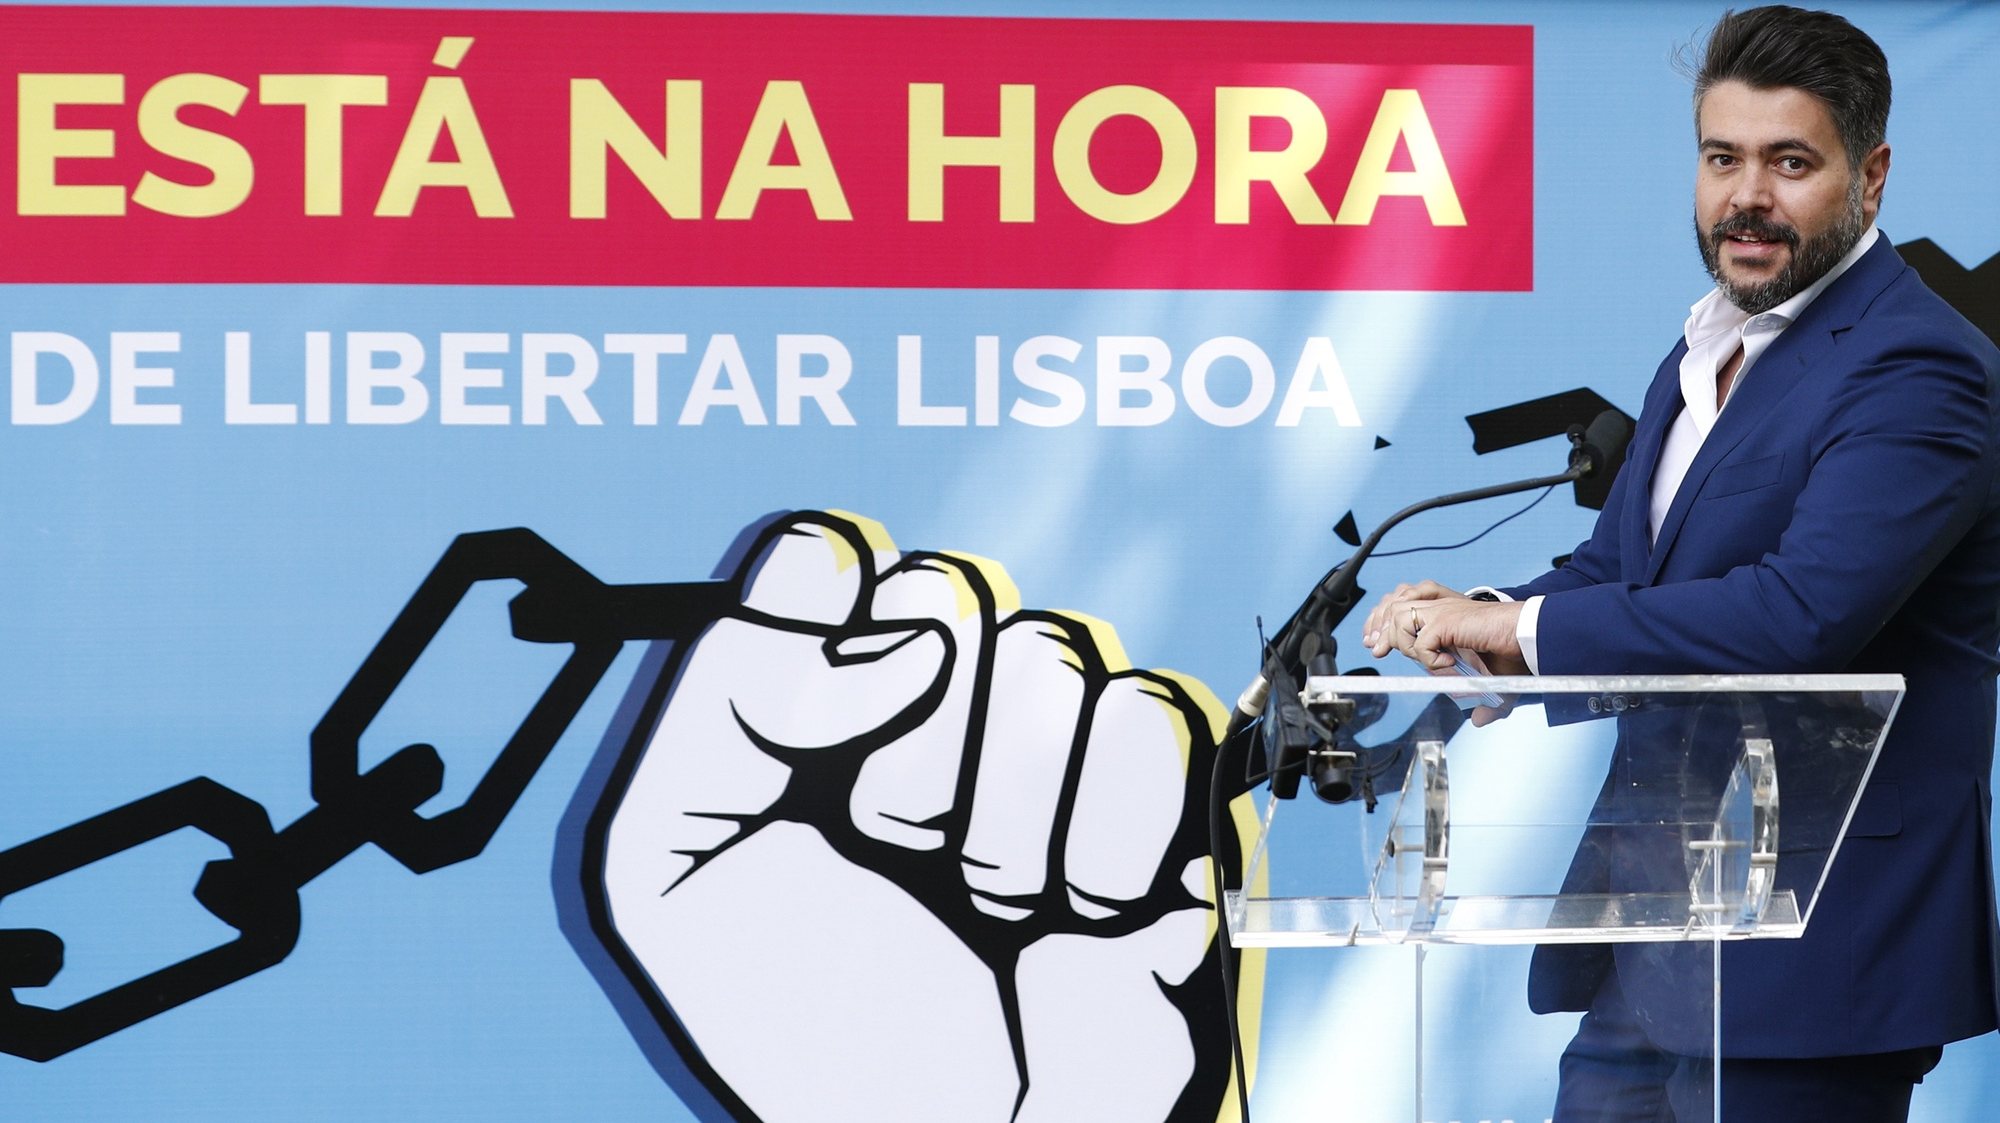 O candidato do Iniciativa Liberal (IL) à Câmara Municipal de Lisboa, Bruno Horta Soares, intervém durante a apresentação dos candidatos aos órgãos municipais para as eleições autárquicas, em Lisboa, 23 de maio de 2021. ANTÓNIO COTRIM/LUSA